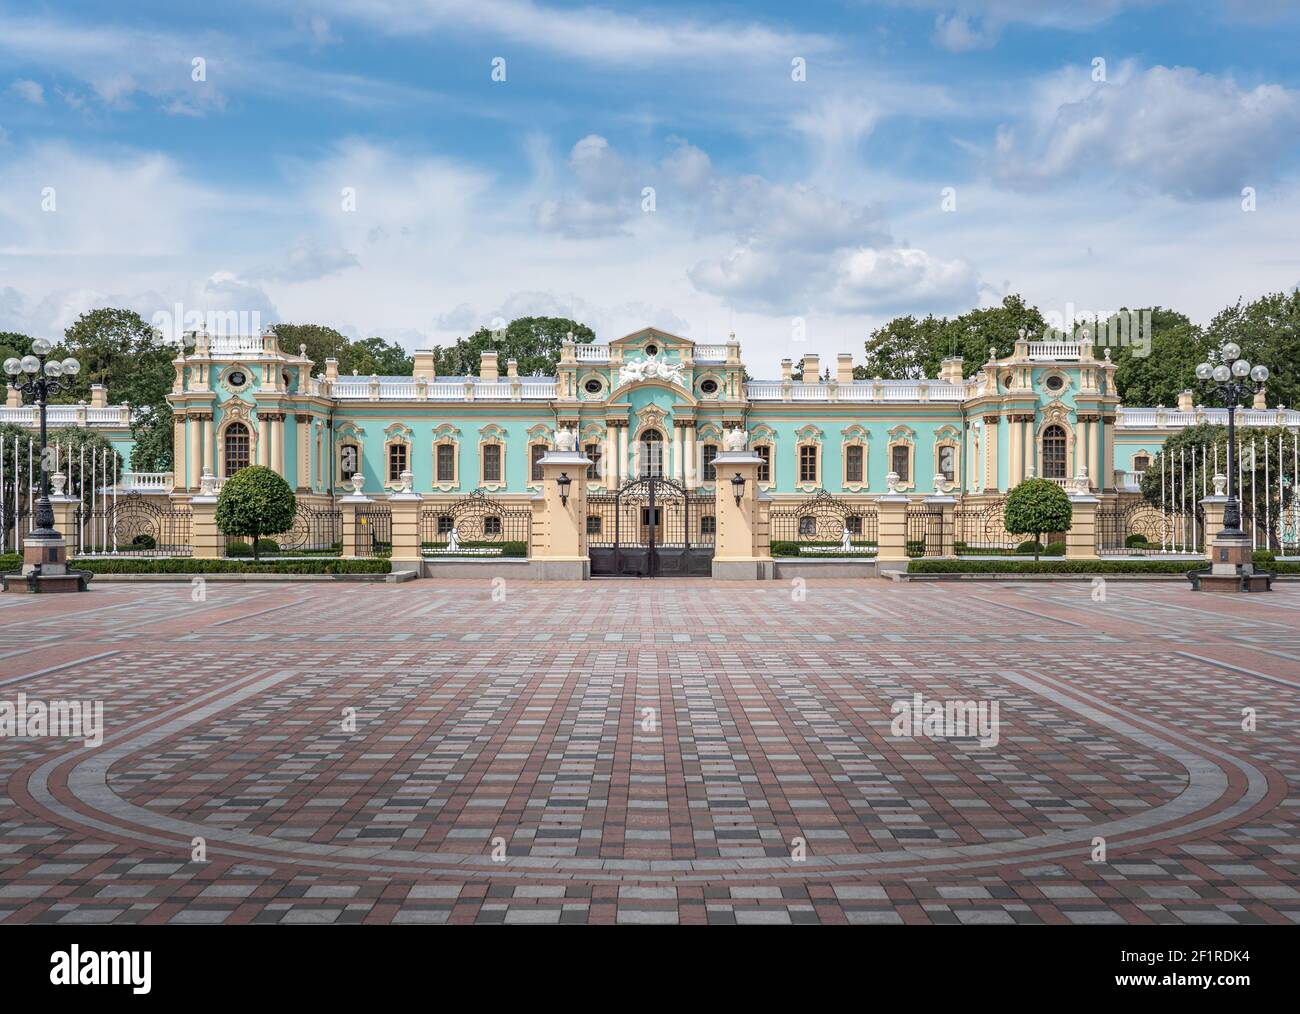 Palacio Mariyinsky residencia presidencial en la plaza Konstytutsii - Kiev, Ucrania Foto de stock